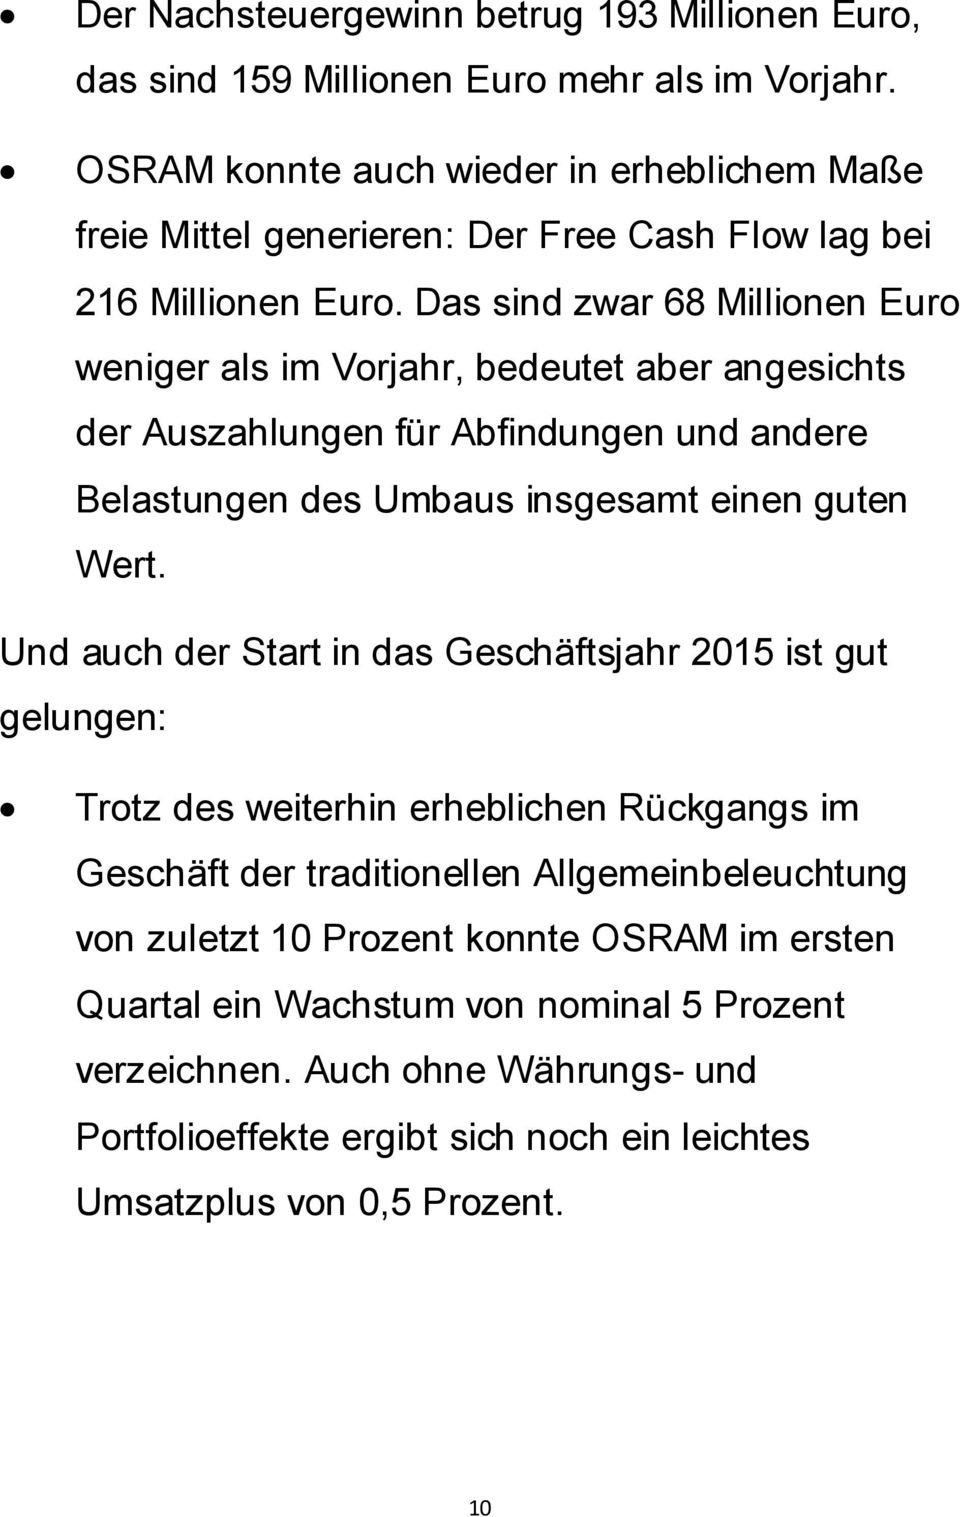 Das sind zwar 68 Millionen Euro weniger als im Vorjahr, bedeutet aber angesichts der Auszahlungen für Abfindungen und andere Belastungen des Umbaus insgesamt einen guten Wert.